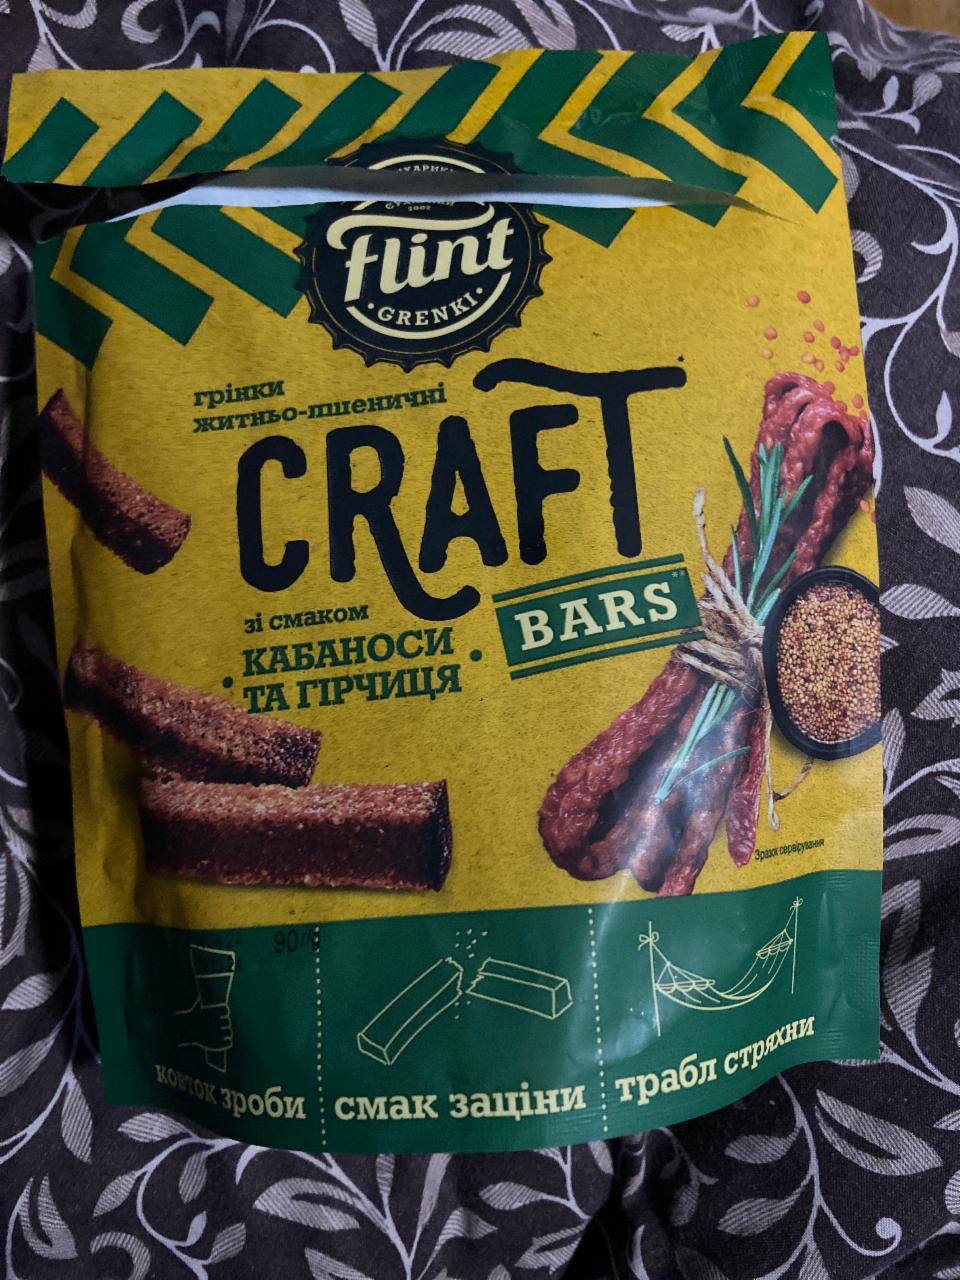 Фото - Грінки житньо-пшеничні зі смаком кабаноси та гірчиця Craft Flint